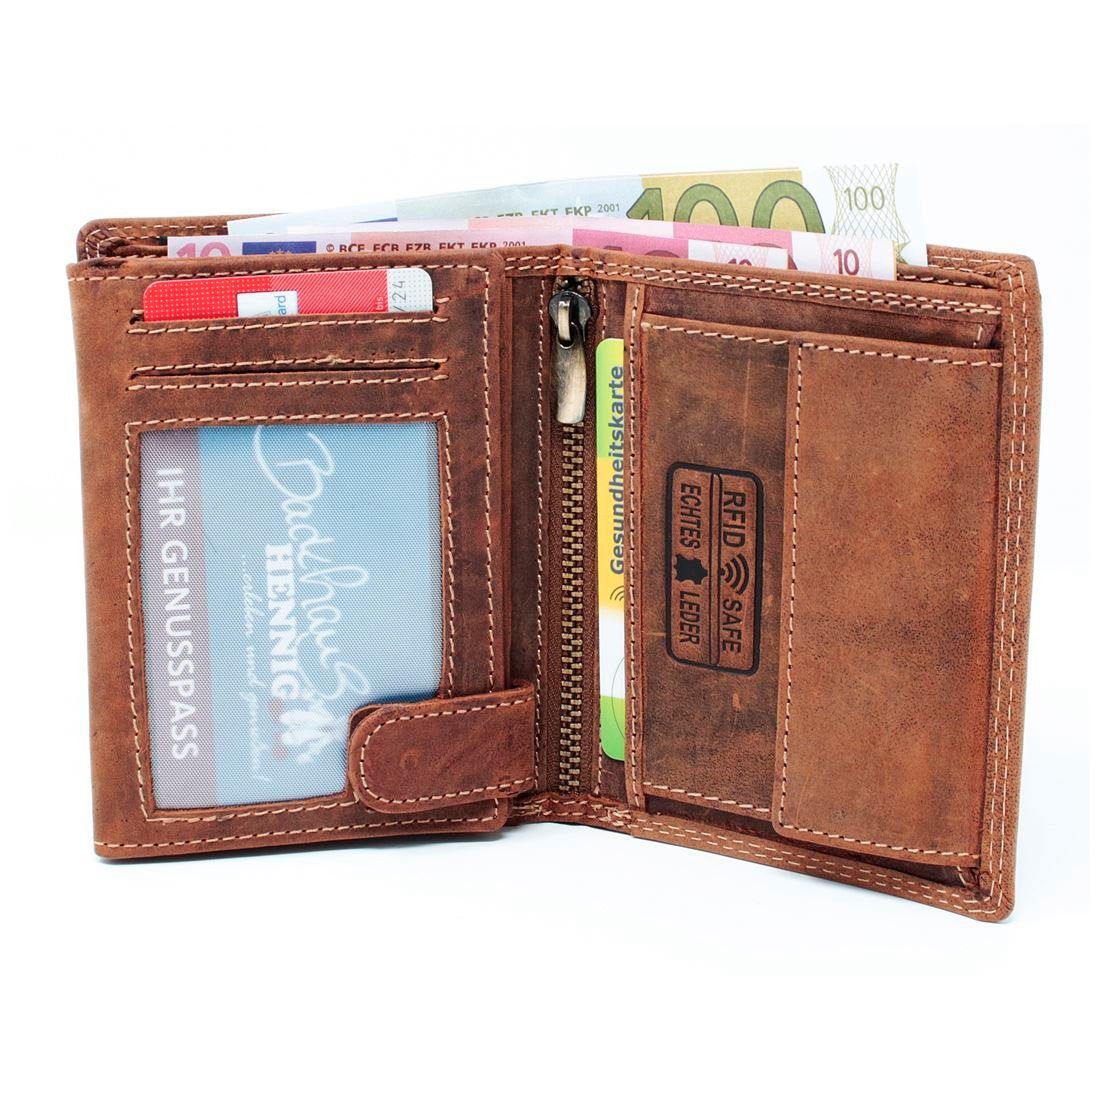 SHG Brieftasche Männerbörse mit Schutz Leder Geldbeutel Geldbörse Herren Geldbörse RFID Portemonnaie Lederbörse Münzfach Börse,